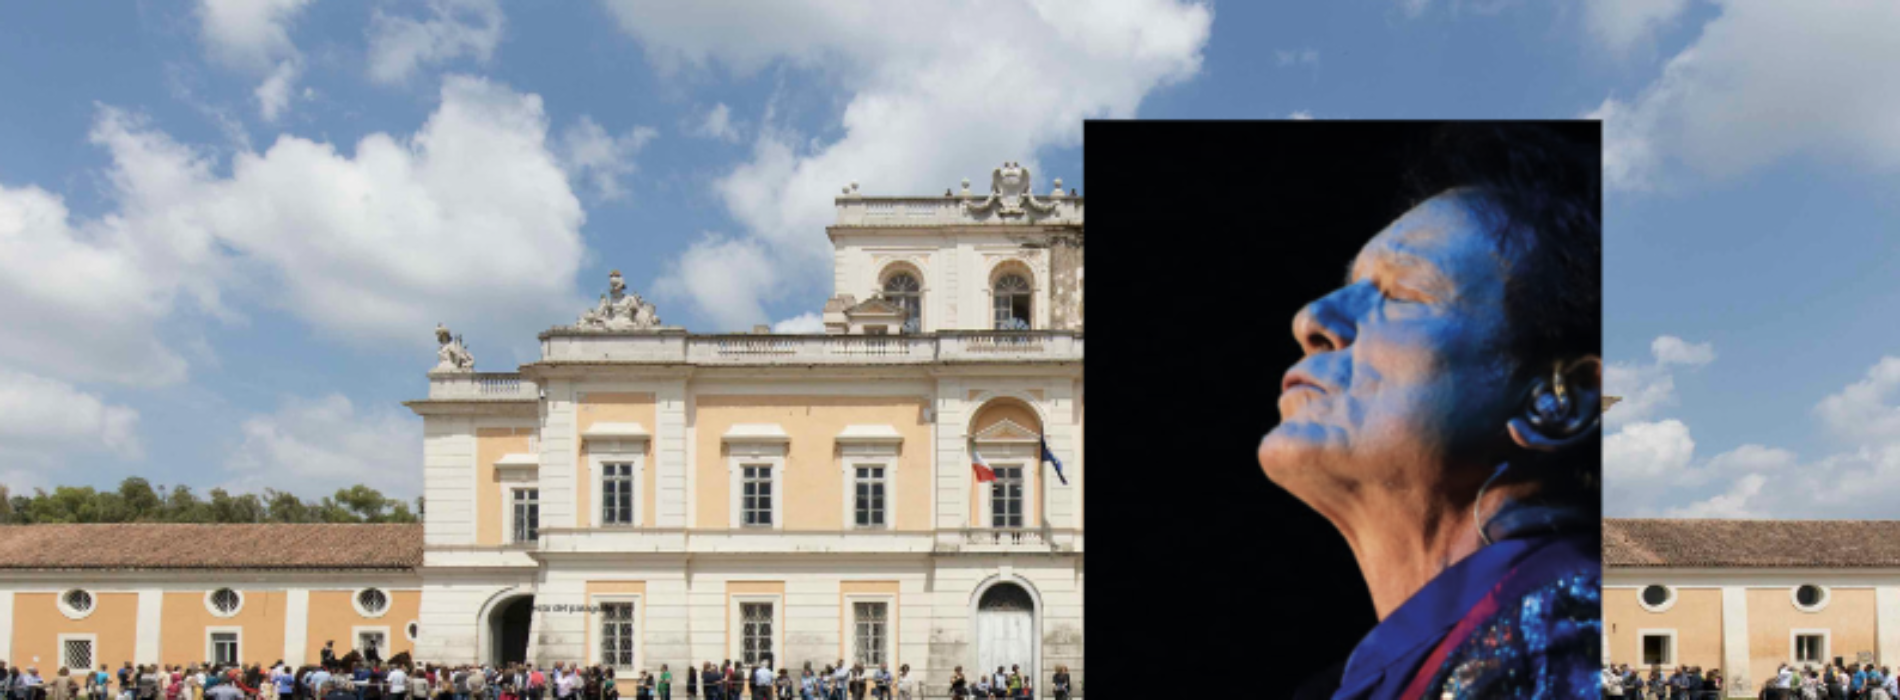 Carditello Festival, venerdì è il giorno di Massimo Ranieri